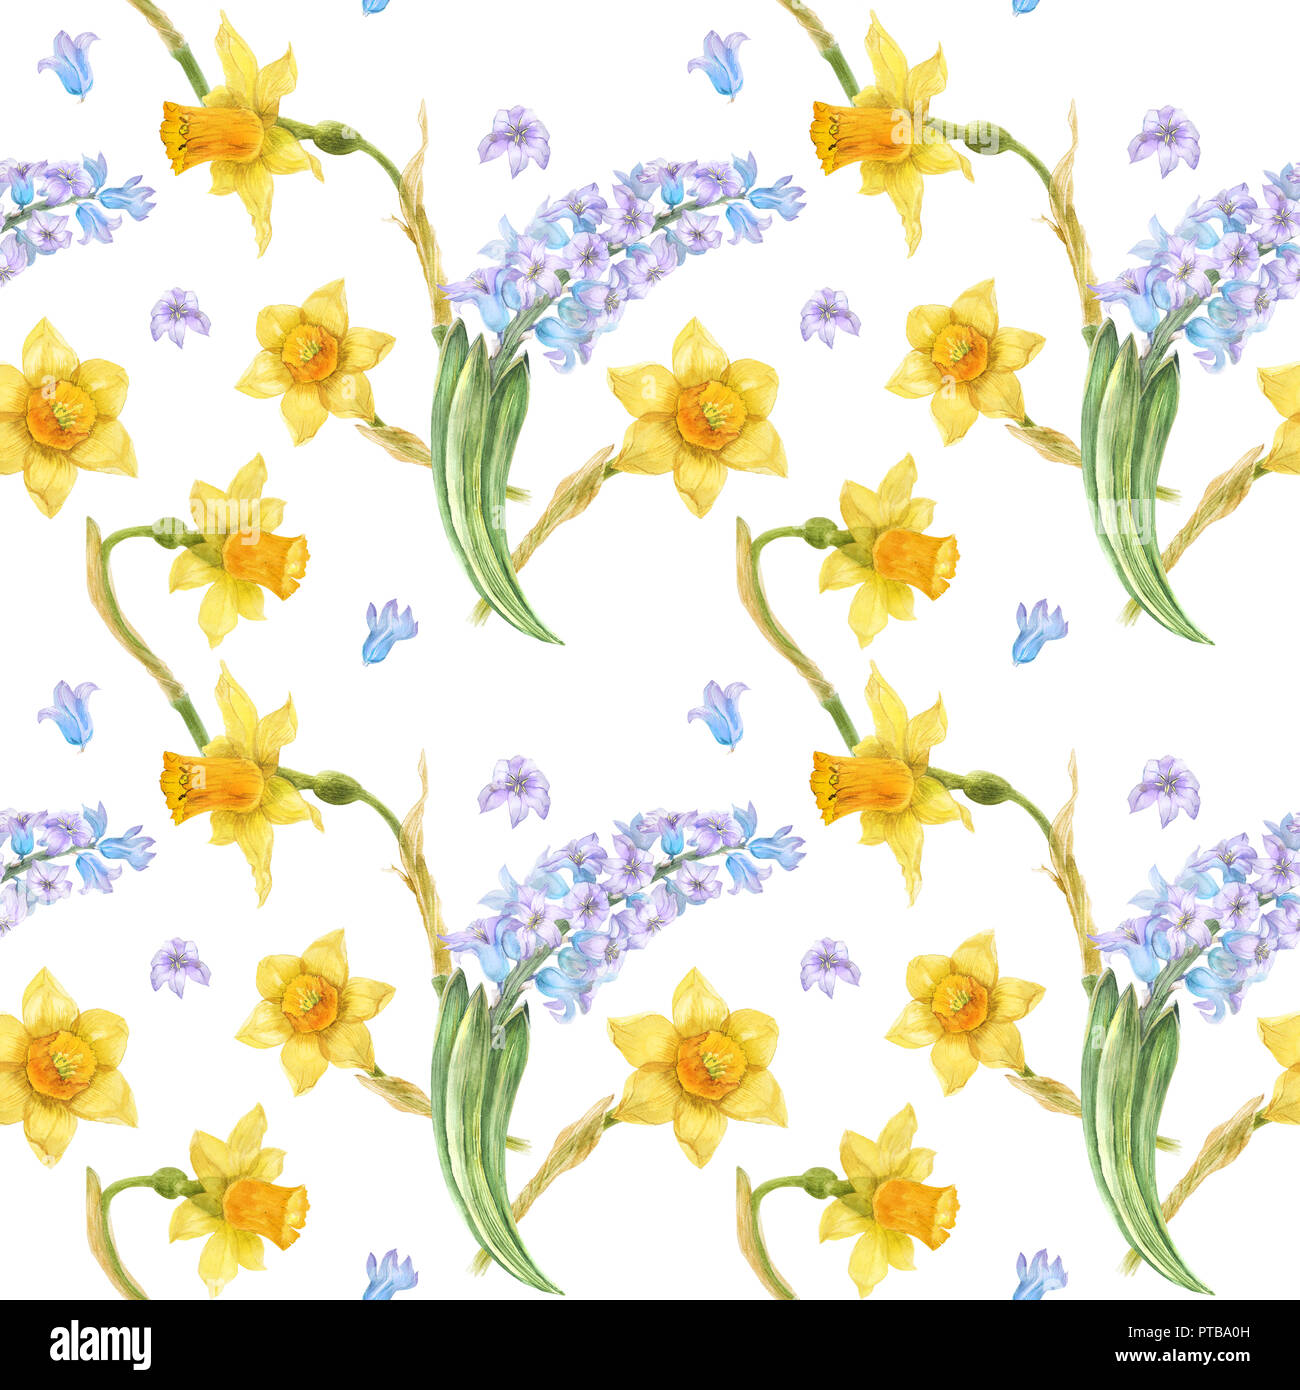 Aquarell botanischer Illustration im Landhausstil. Blaue Hyazinthe und gelbe Narzisse auf einem weißen. Nahtlose Muster, Pfad enthalten Stockfoto